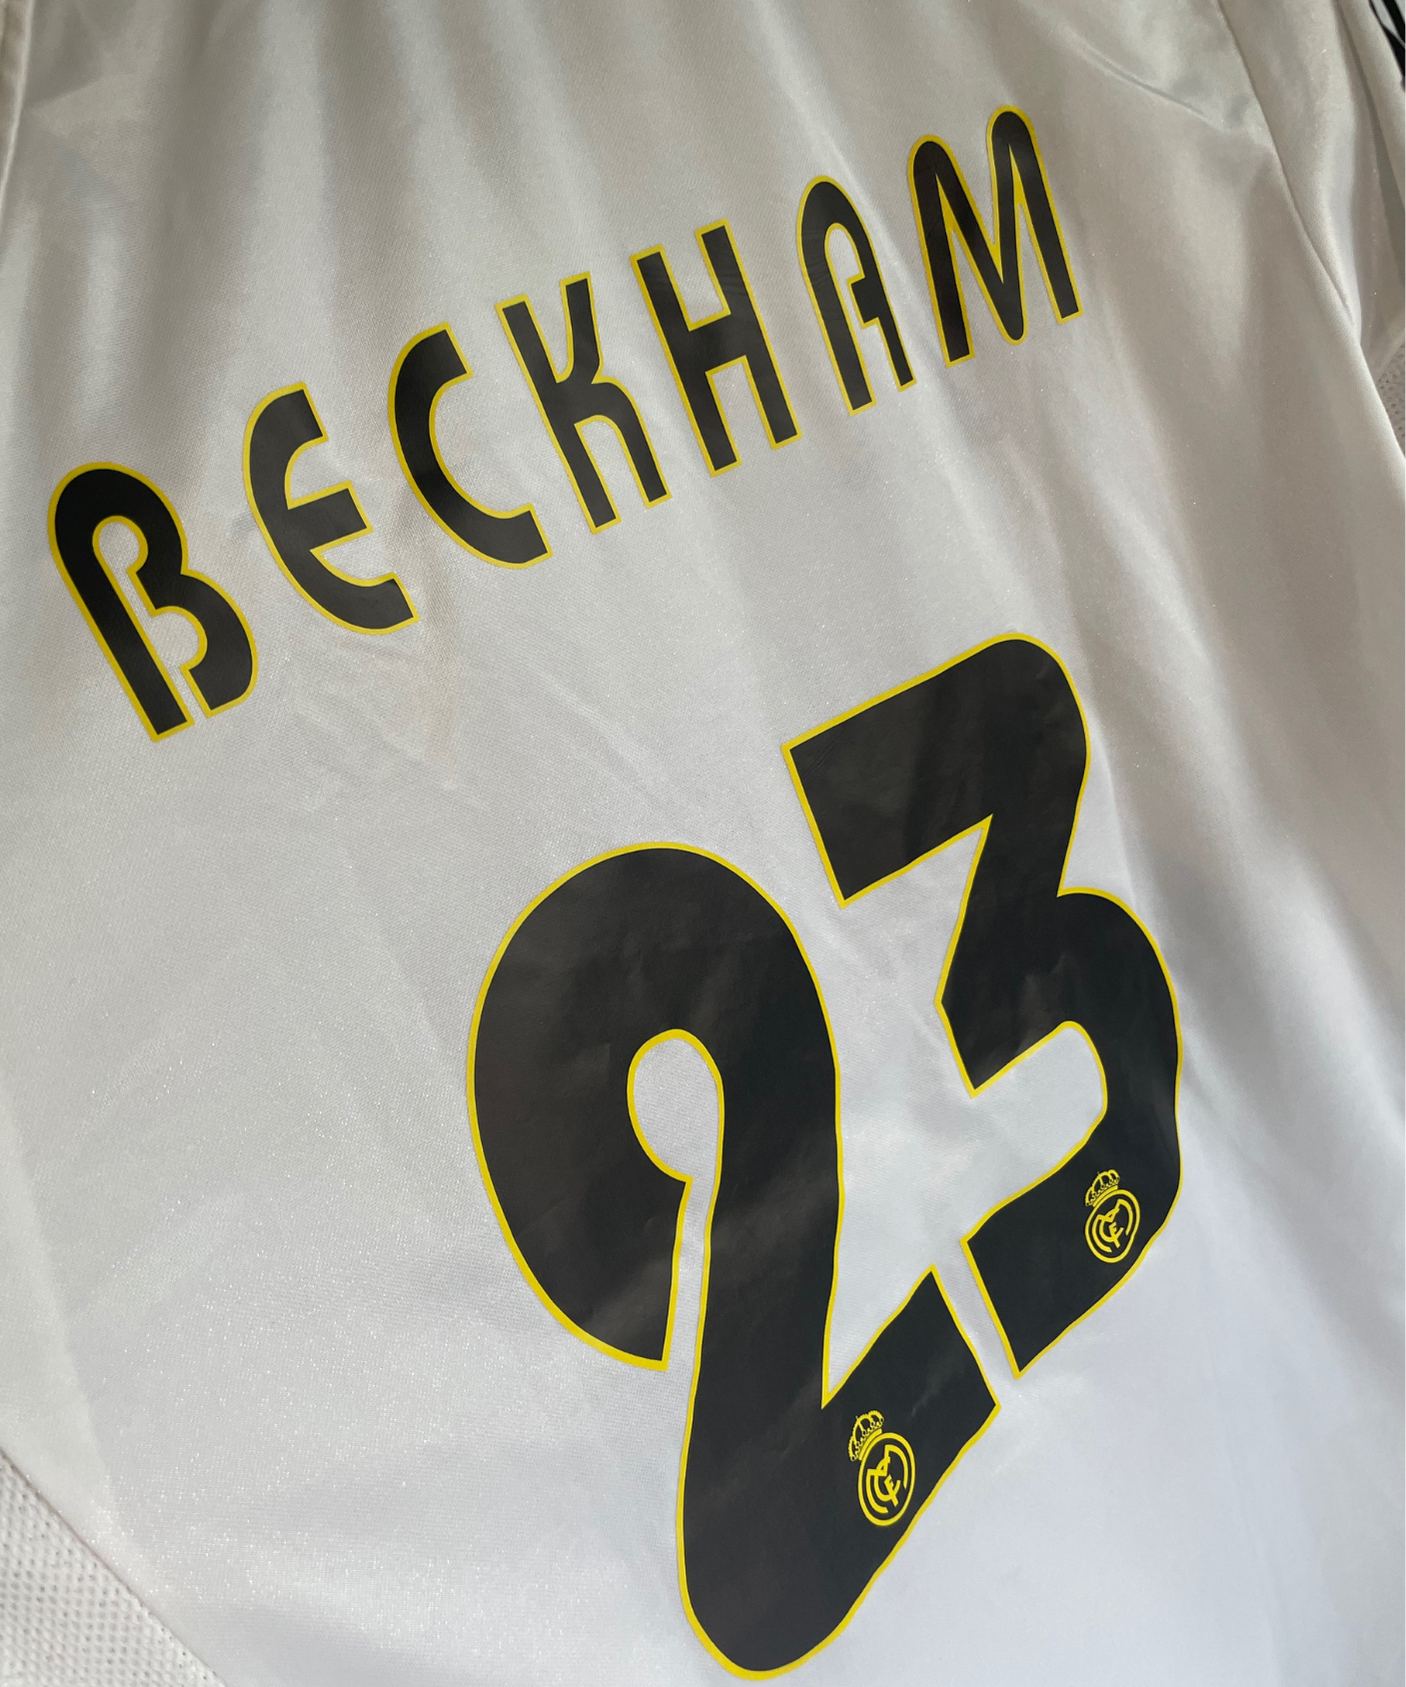 Real Madrid 2004/05 Beckham Home Kit (L)